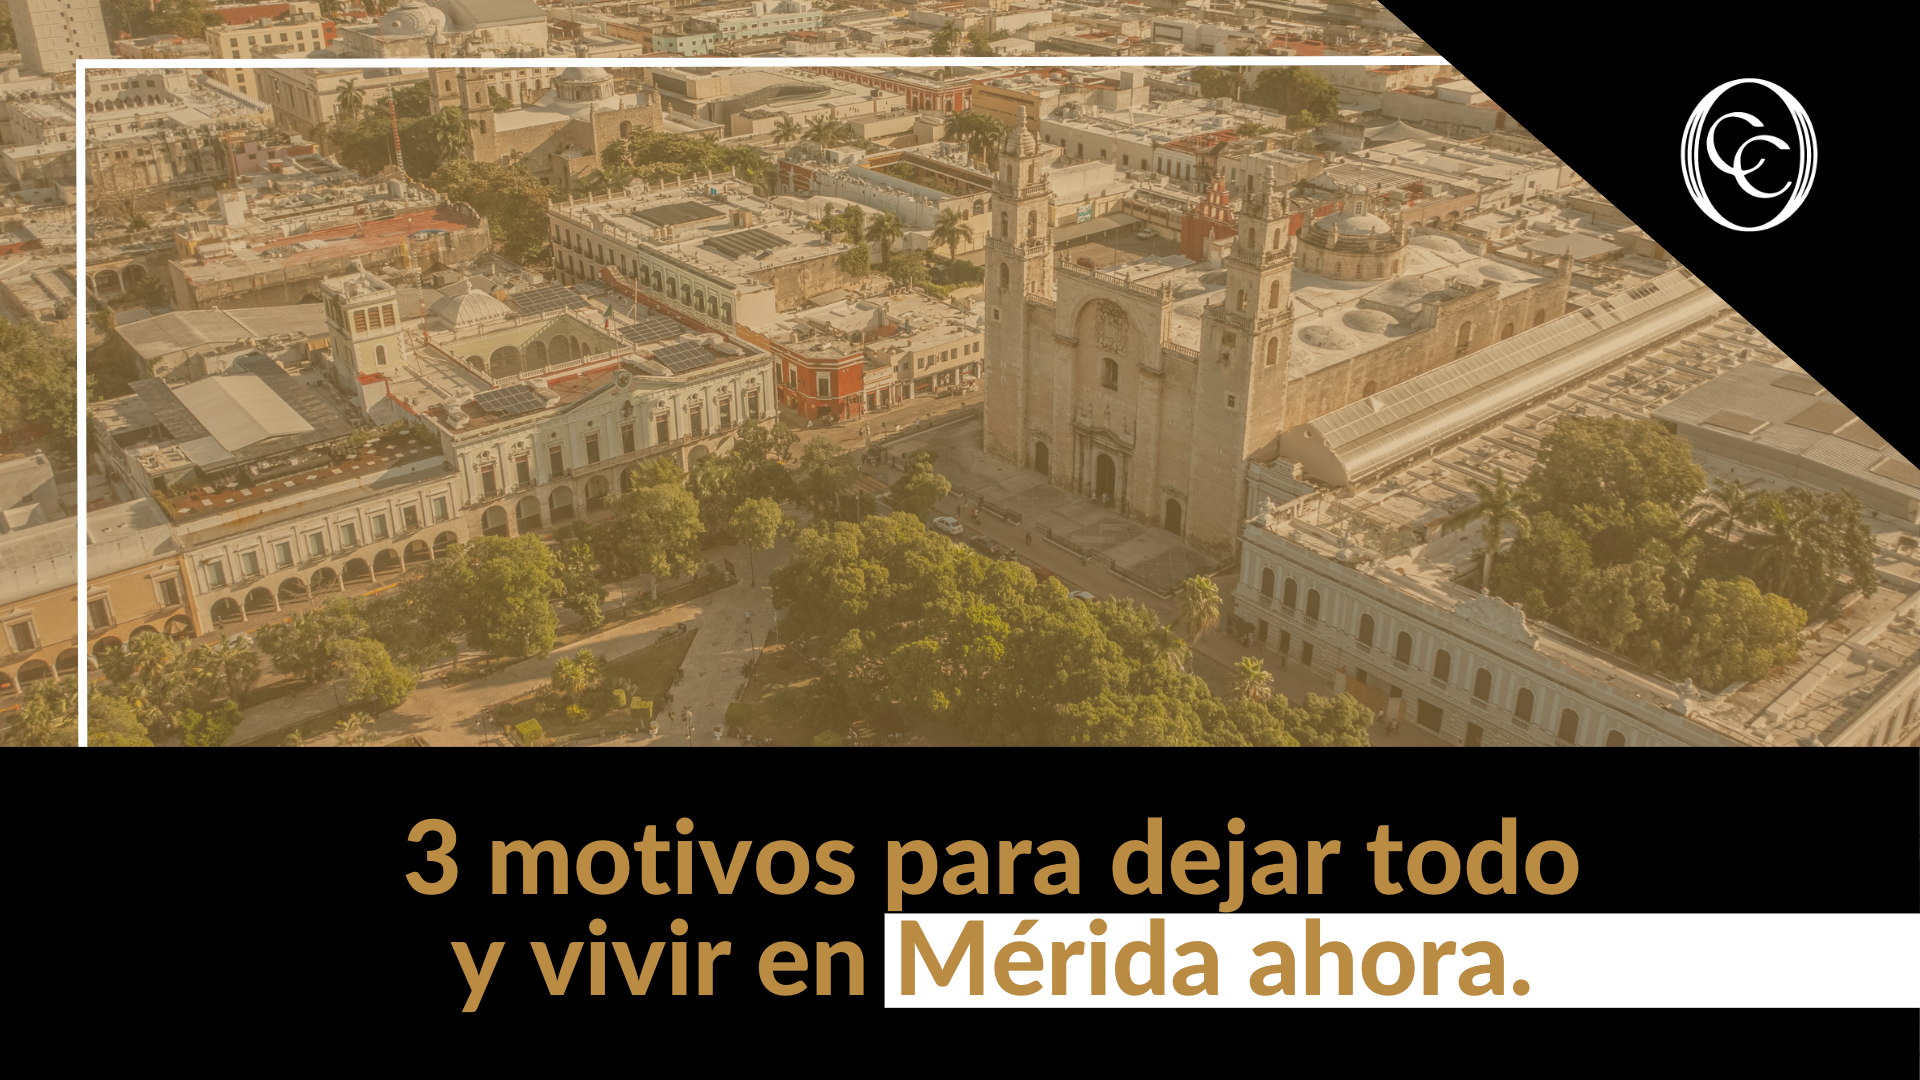 3 motivos para dejar todo y vivir en Mérida ahora.